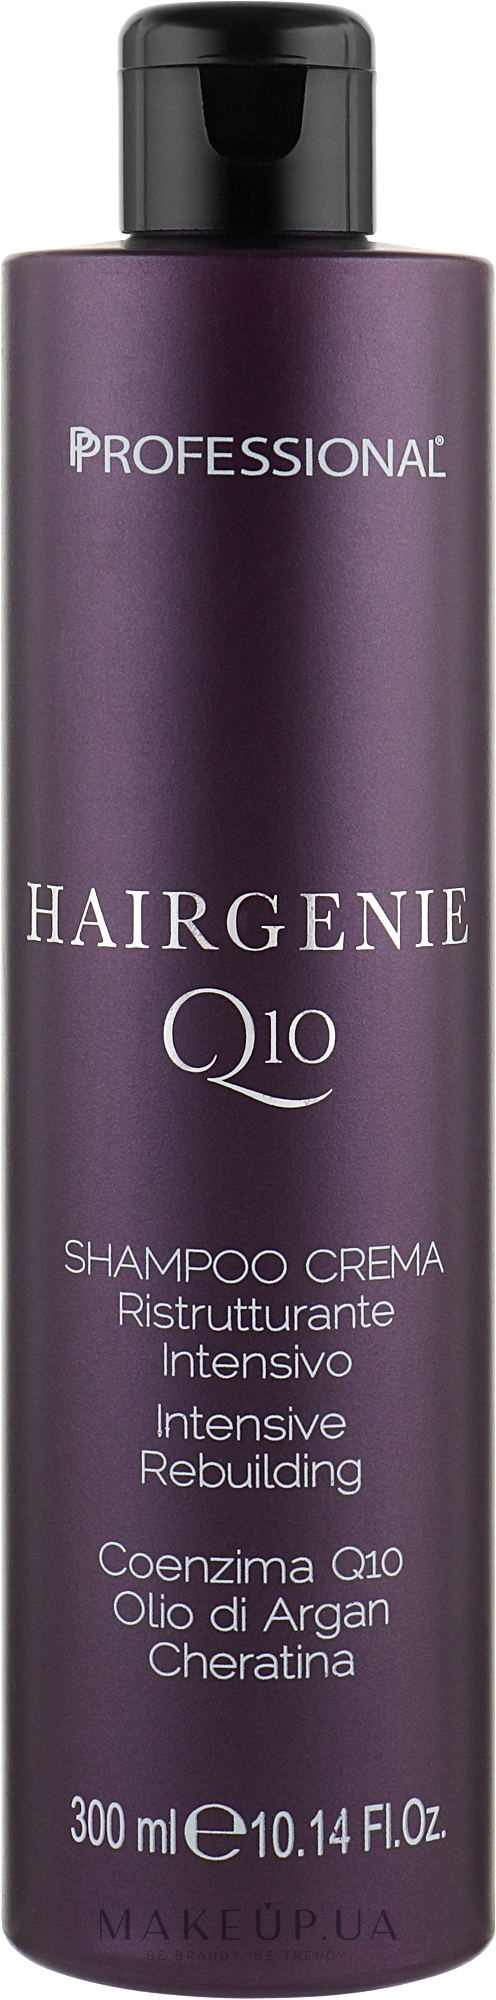 Шампунь-крем для відновлення волосся - Professional Hairgenie Q10 Shampoo Cream — фото 300ml